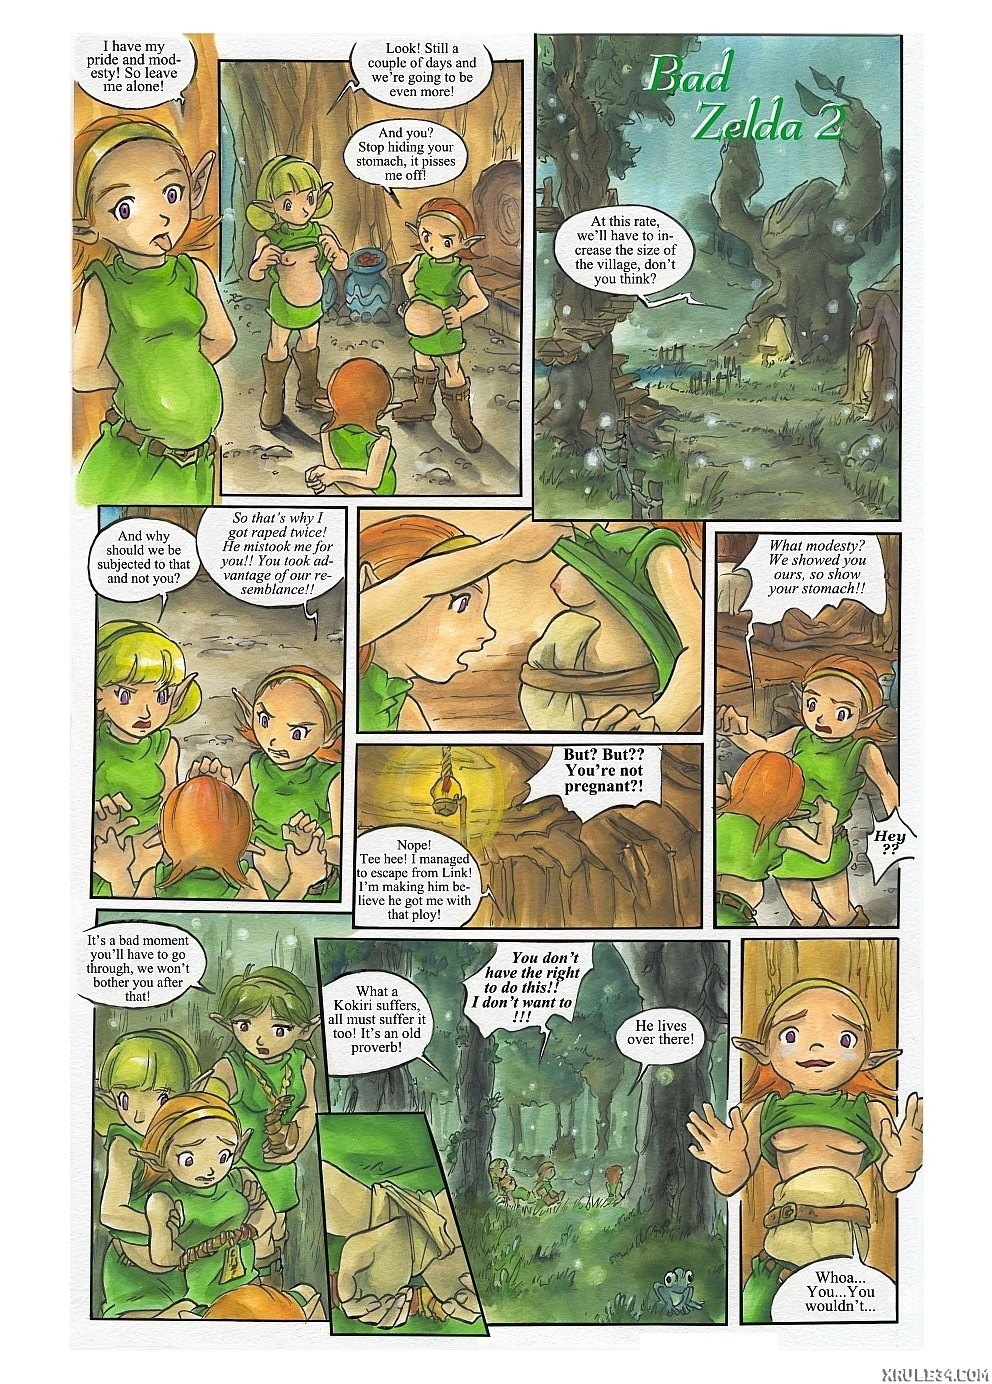 Bad Zelda 2 - Page 1